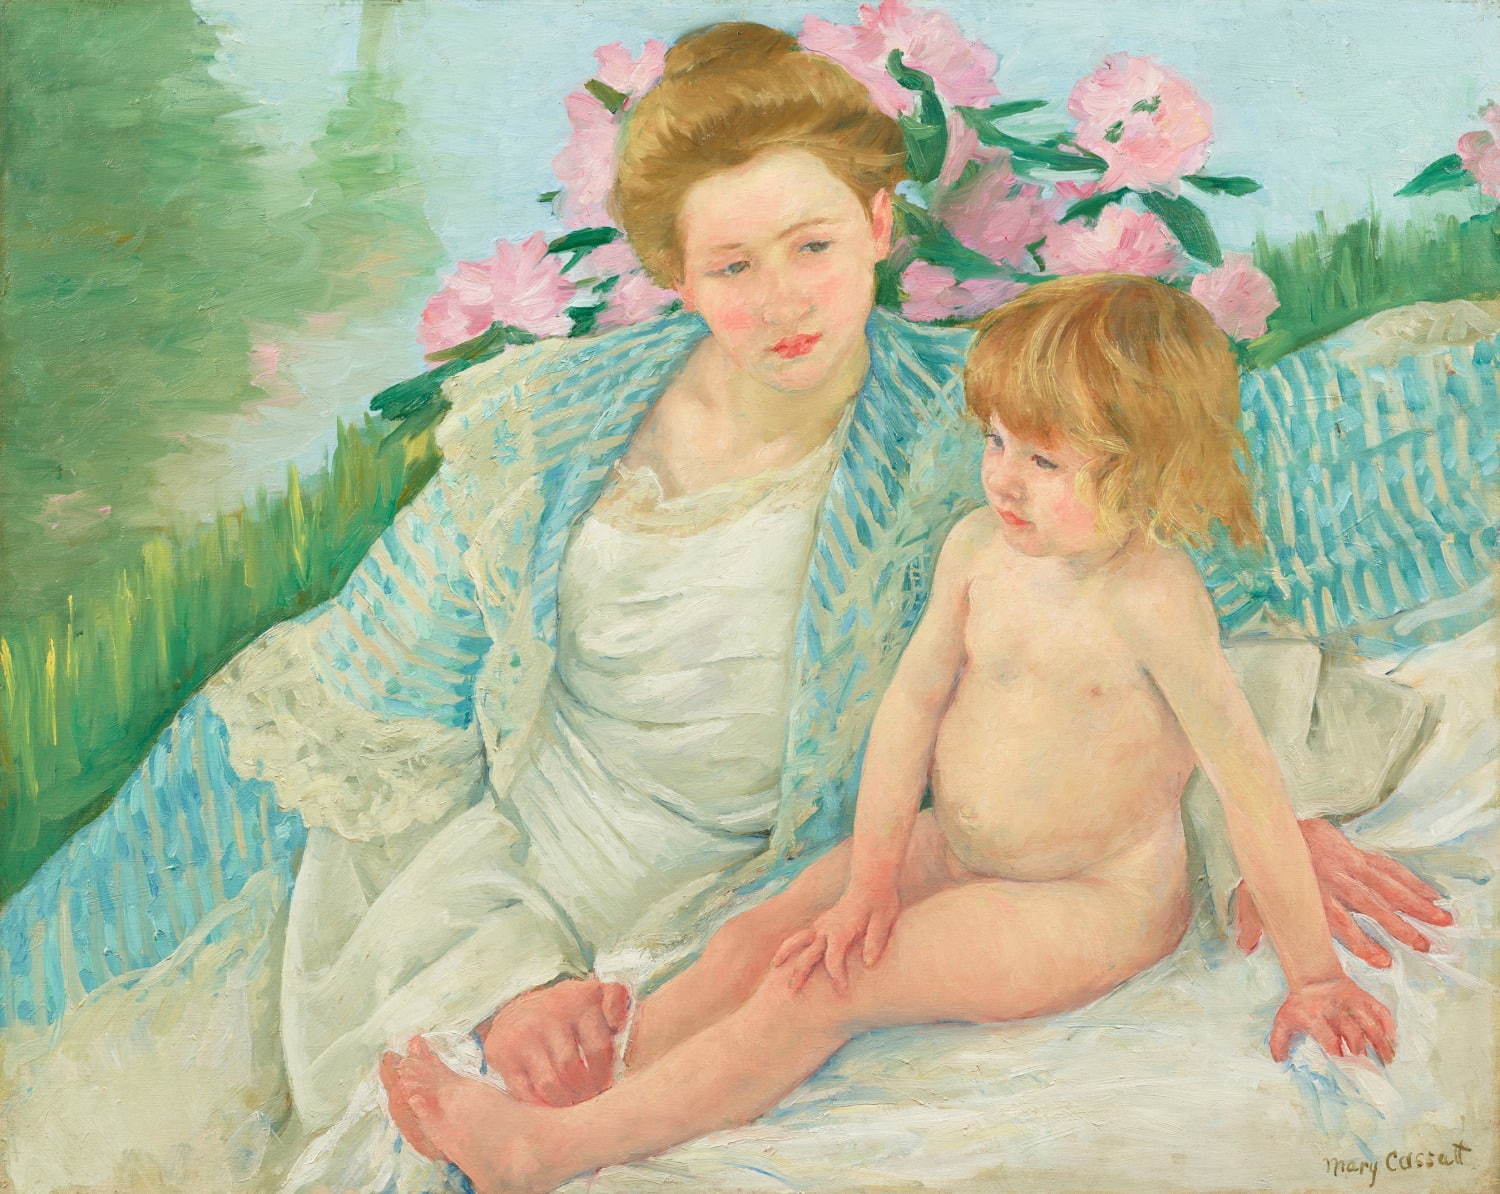 メアリー・カサット《日光浴(浴後)》1901年 石橋財団アーティゾン美術館蔵